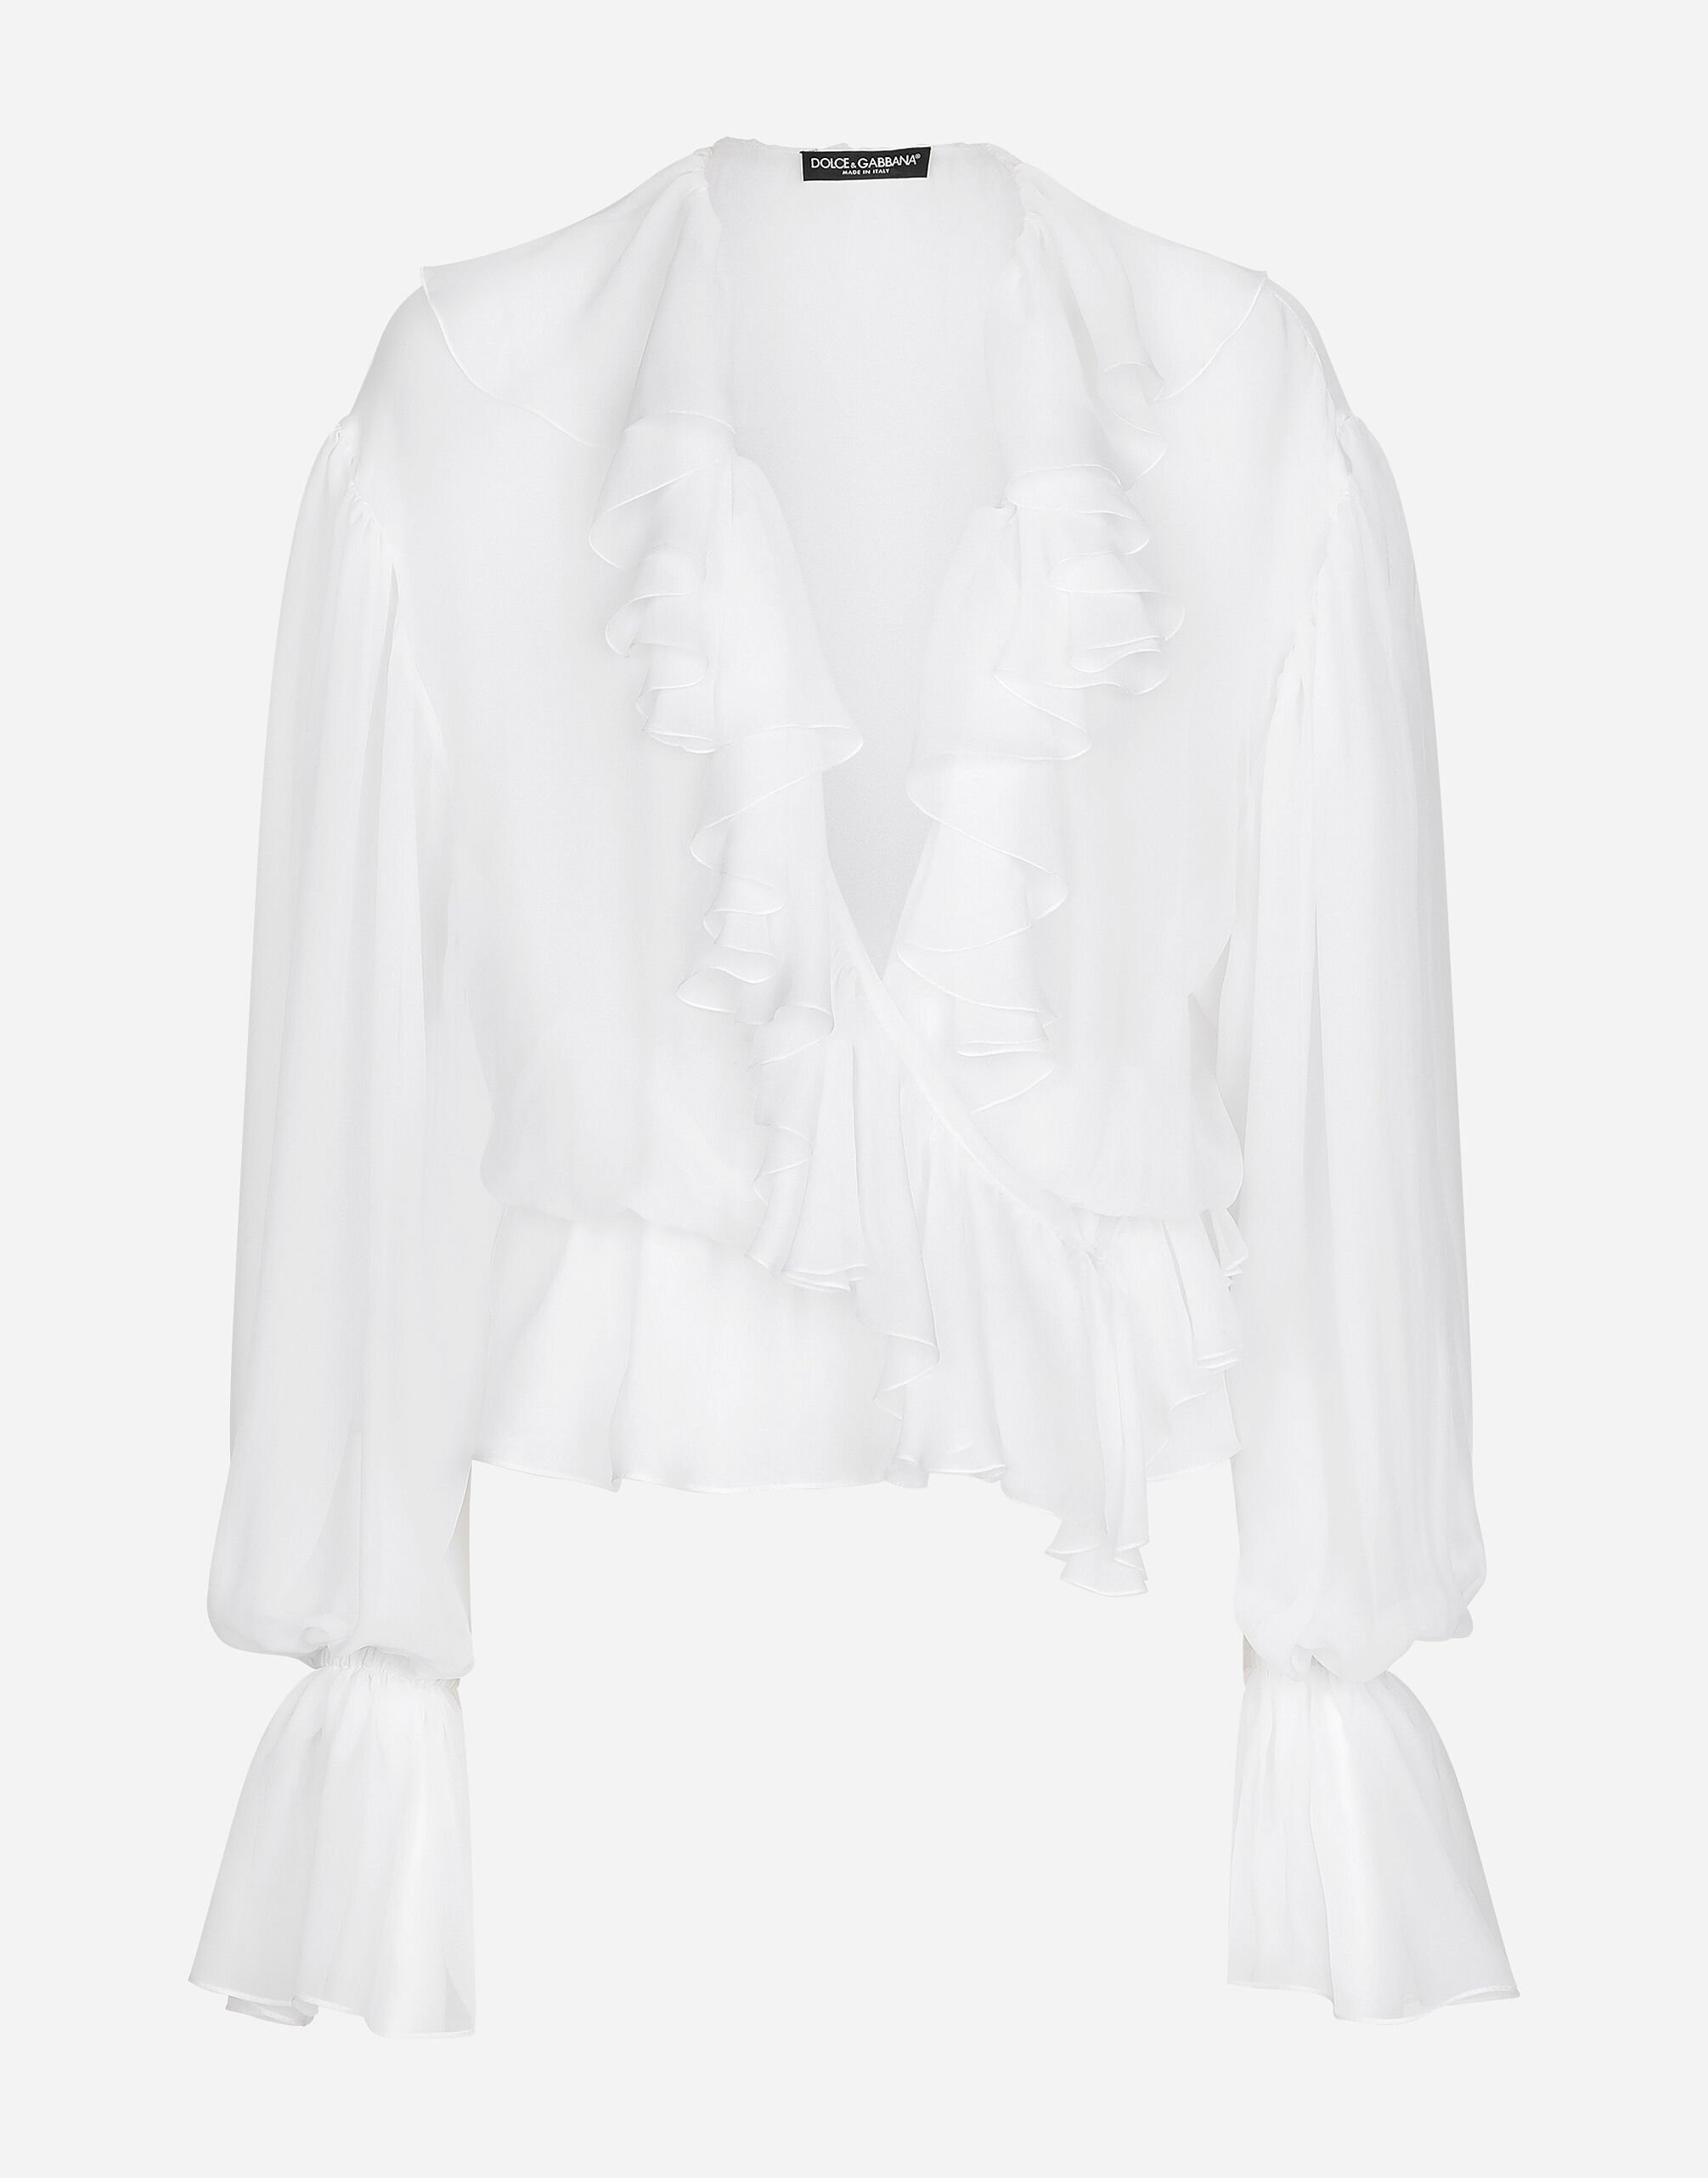 Dolce & Gabbana Chiffon blouse with ruffles Print F7W98THS5NO